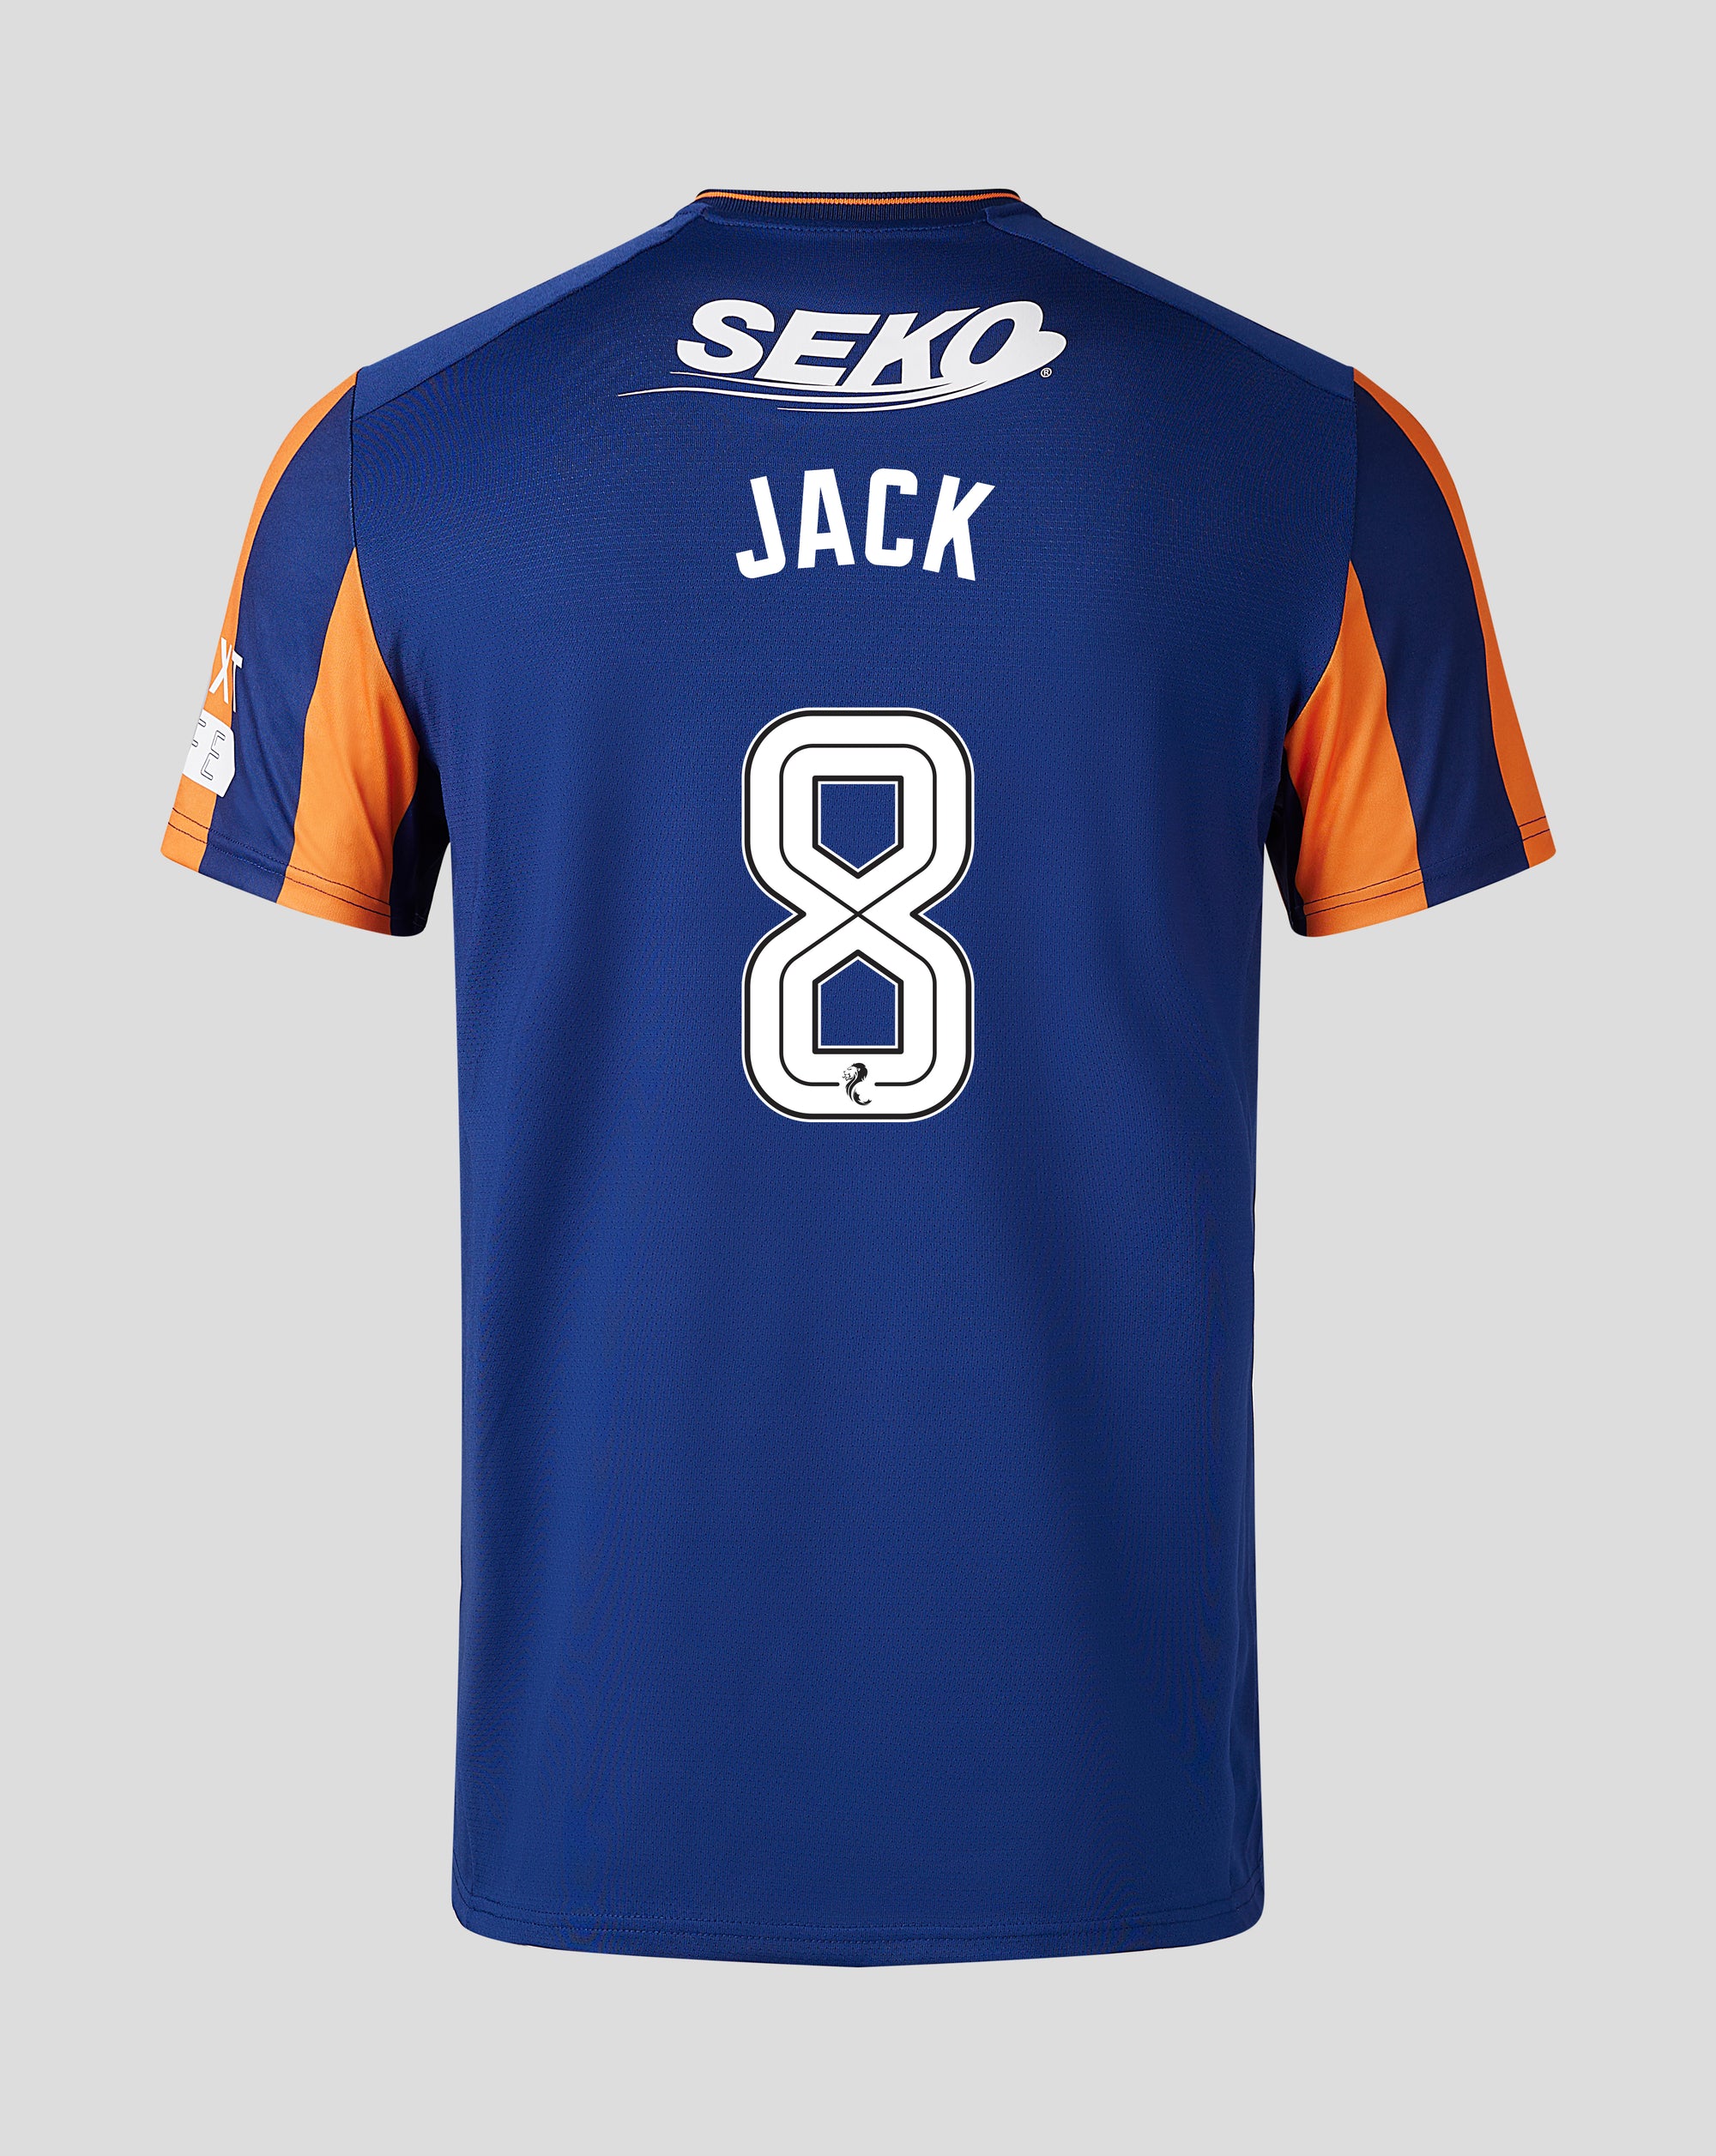 jackpersonalised shirt